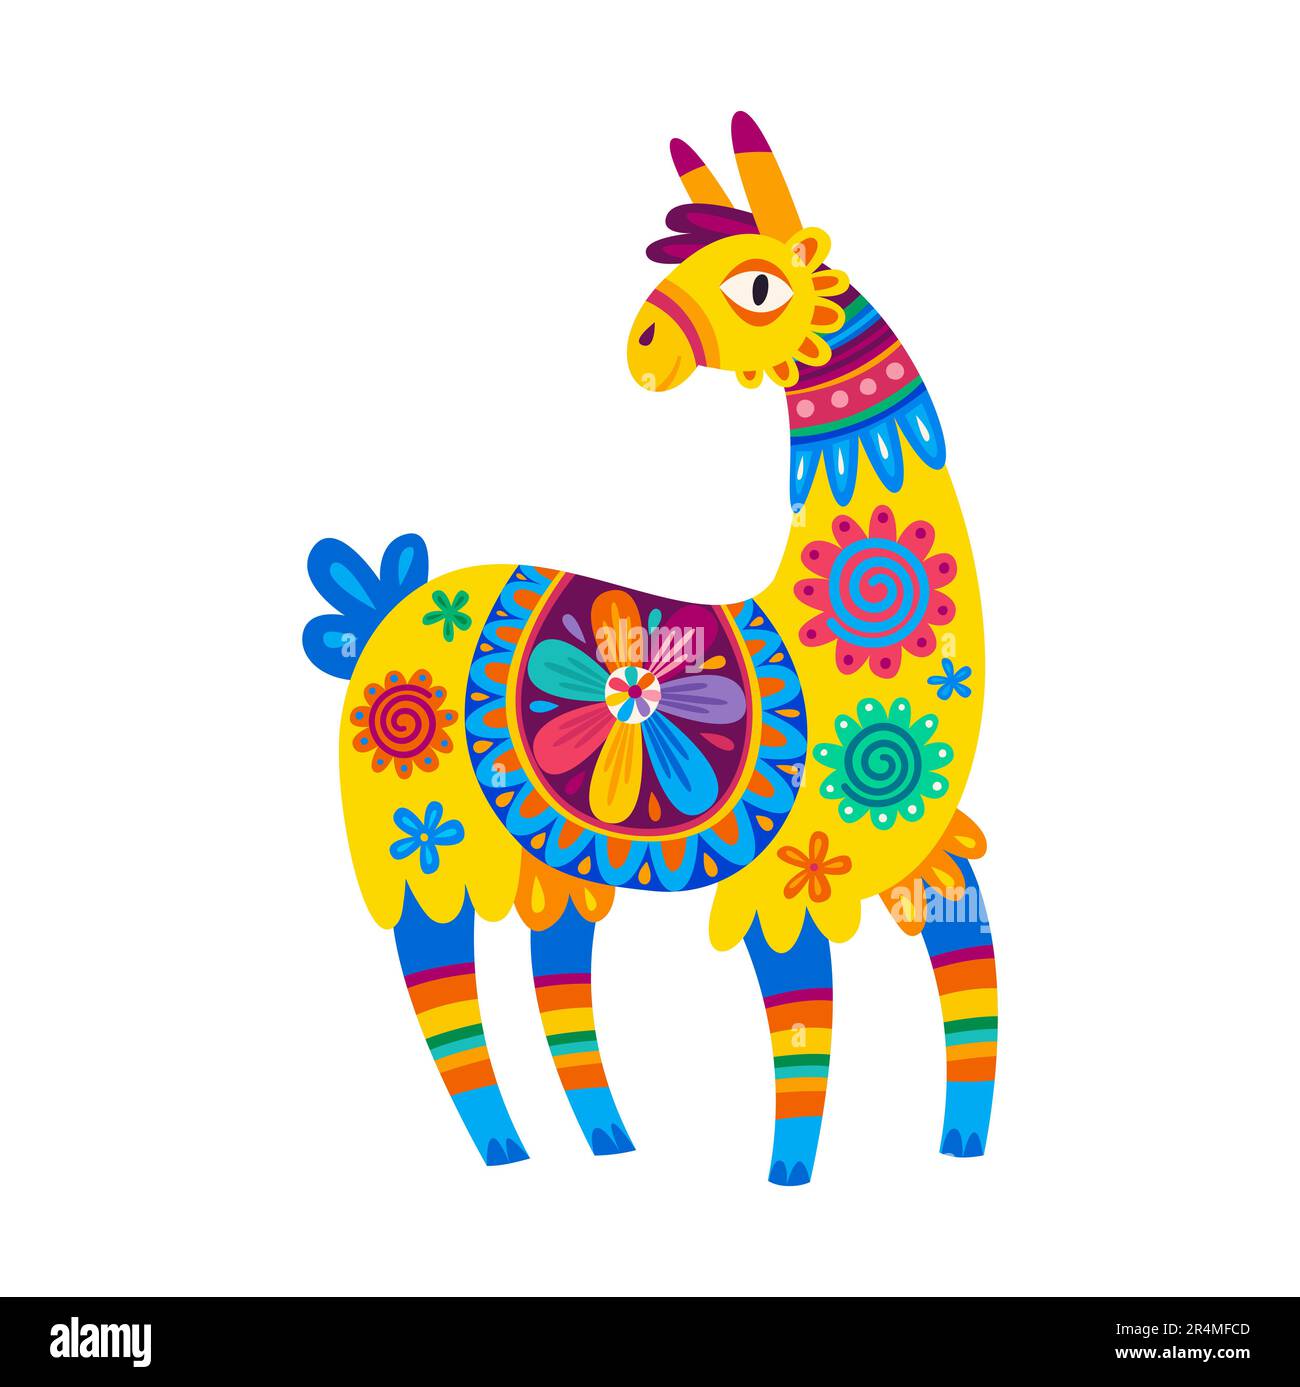 Drôle de vert alpaga, lama personnage de dessin animé avec des accessoires de conception ethnique. Vecteur souriant lama avec de grands yeux, péruvien ou mexicain personnage animal Illustration de Vecteur